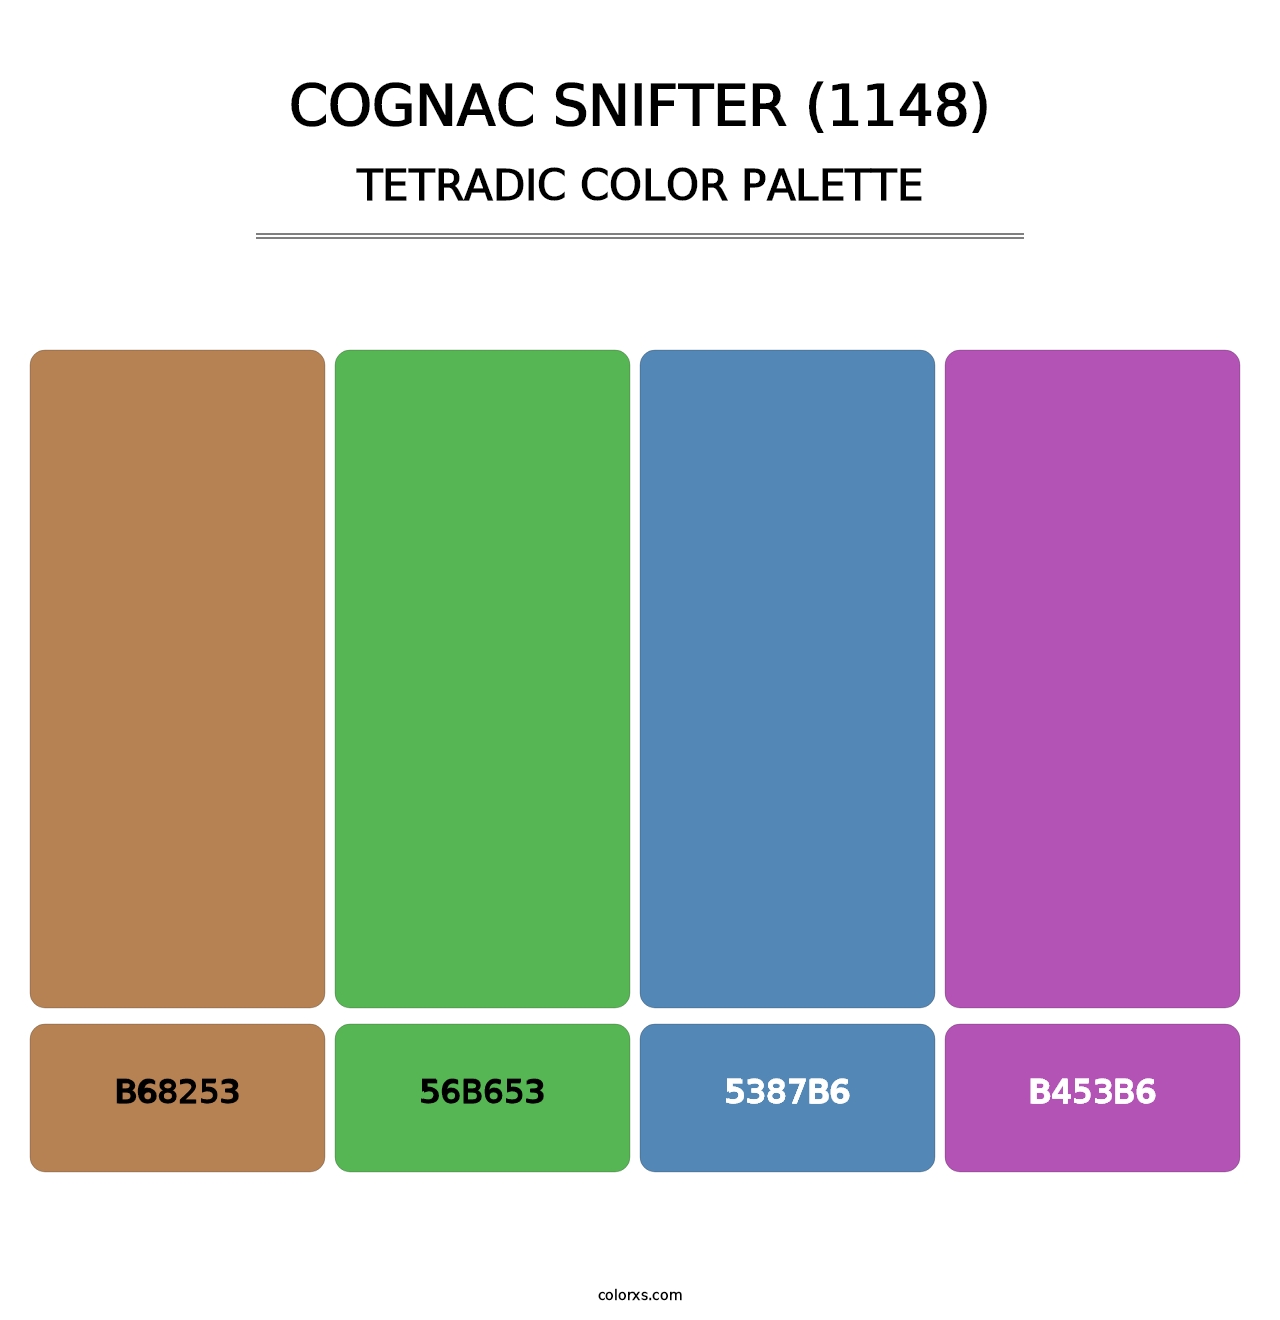 Cognac Snifter (1148) - Tetradic Color Palette